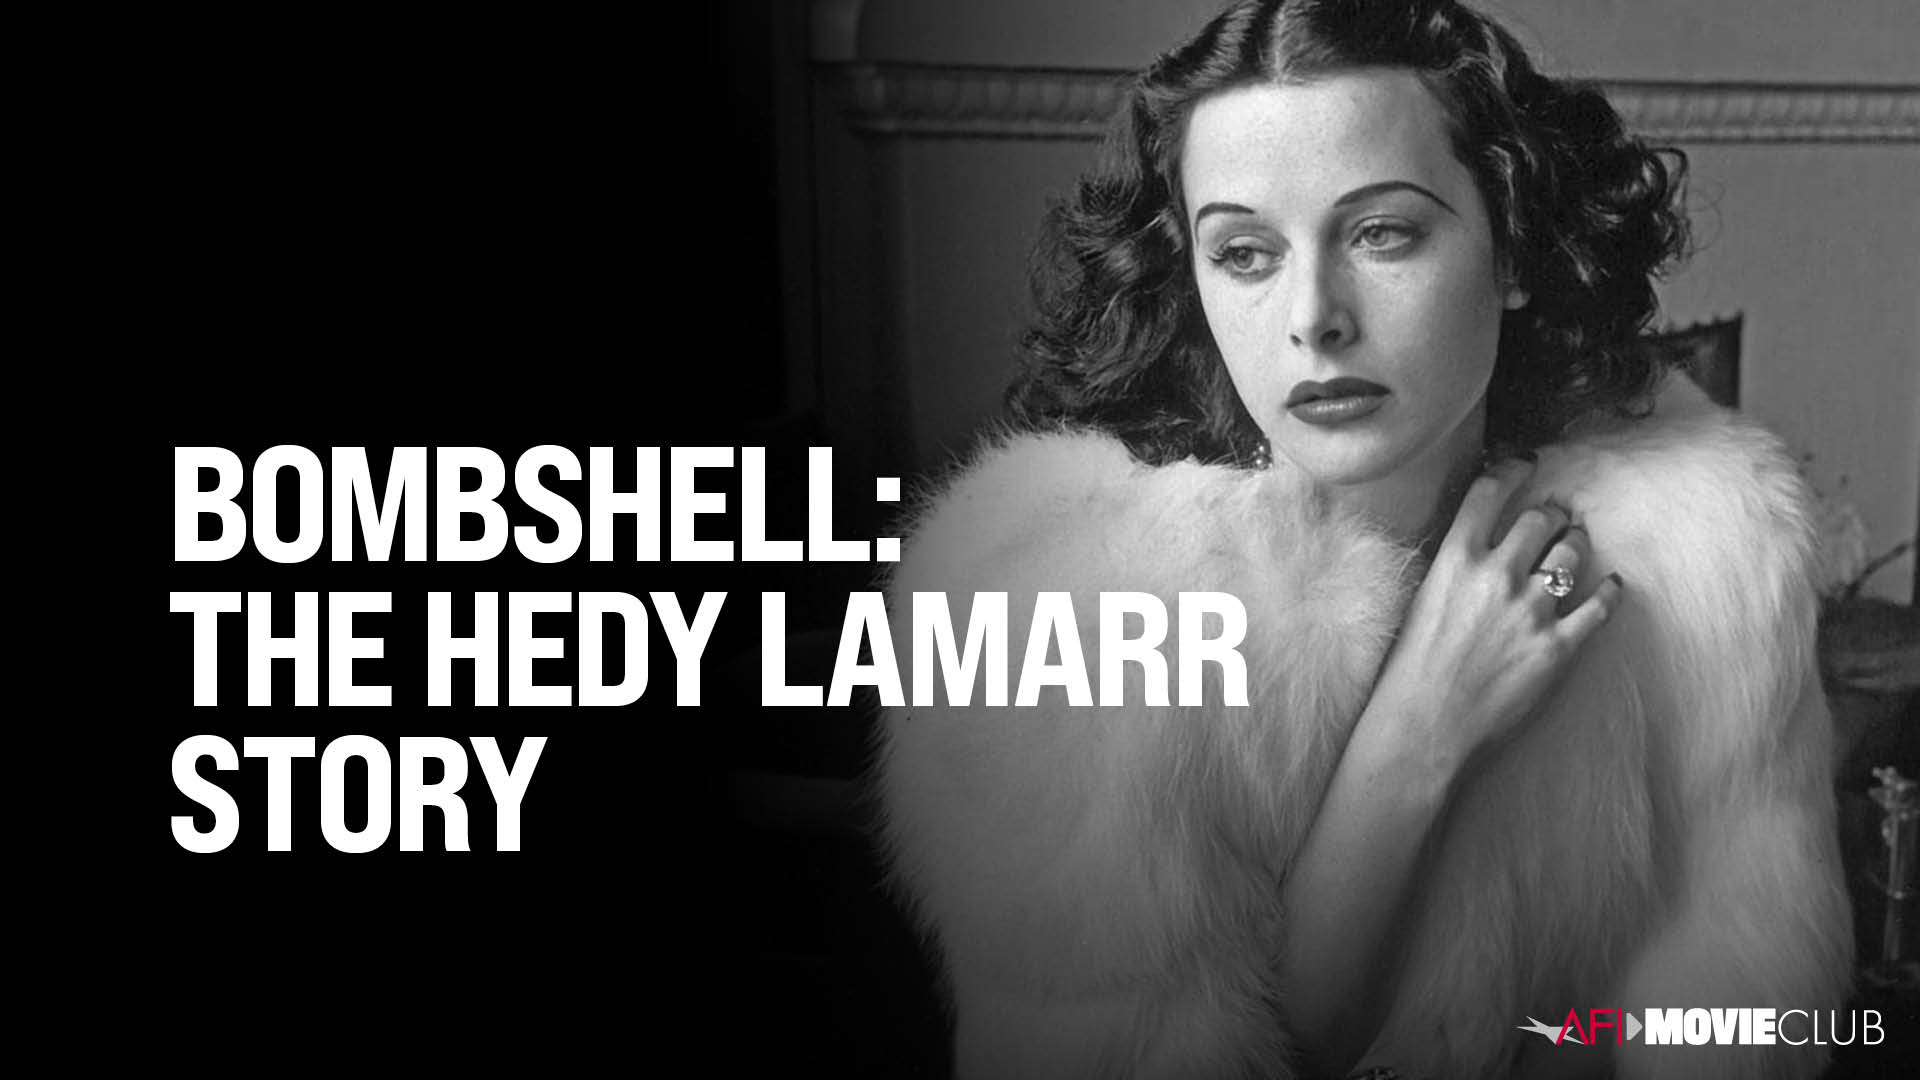 Bombshell: The Hedy Lamarr Story Film Still - Hedy Lamarr